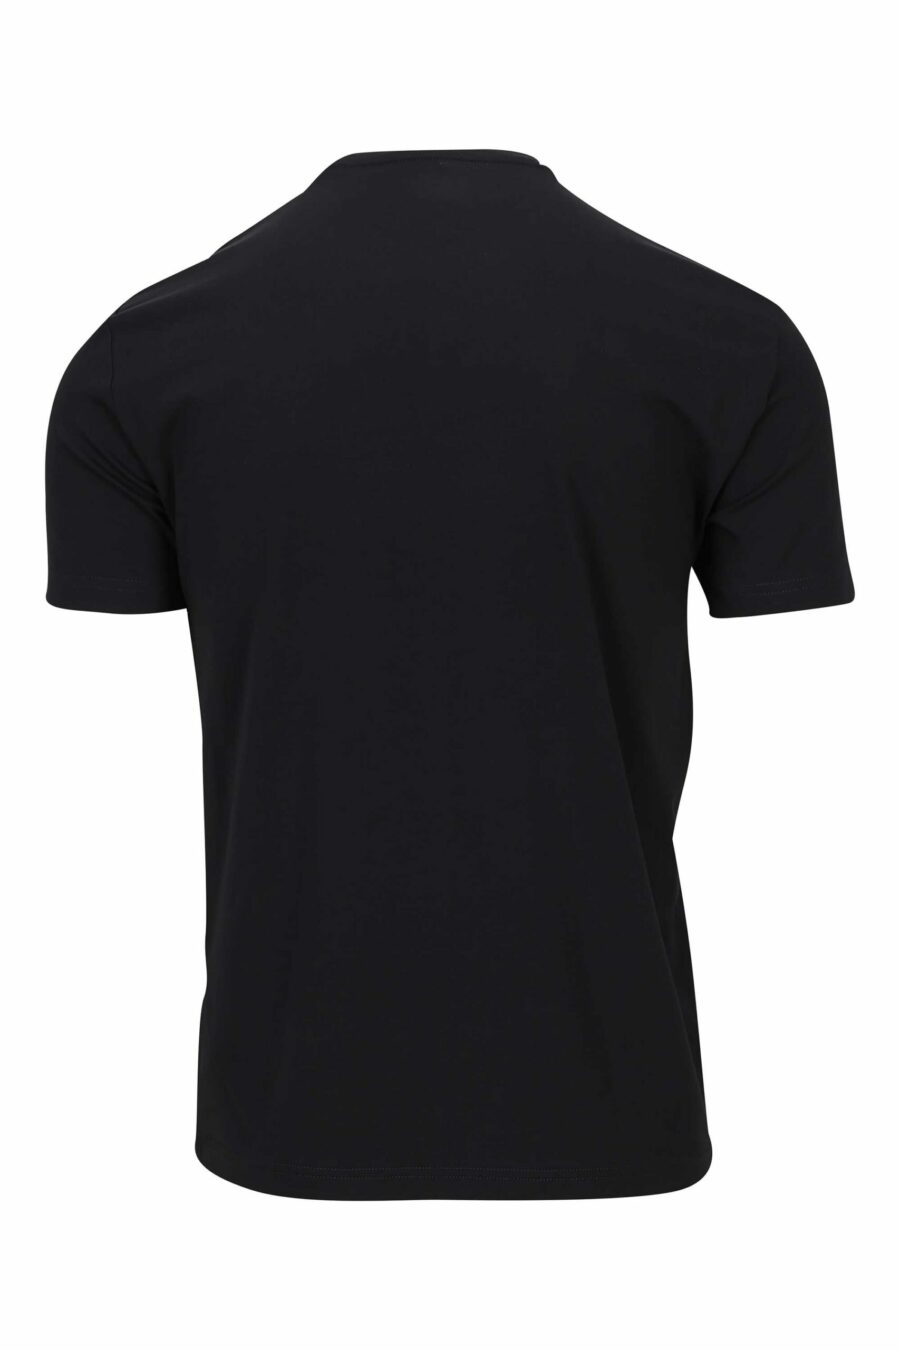 T-shirt noir avec bleu "lux identity" mix maxilogo - 8056787953161 1 scaled